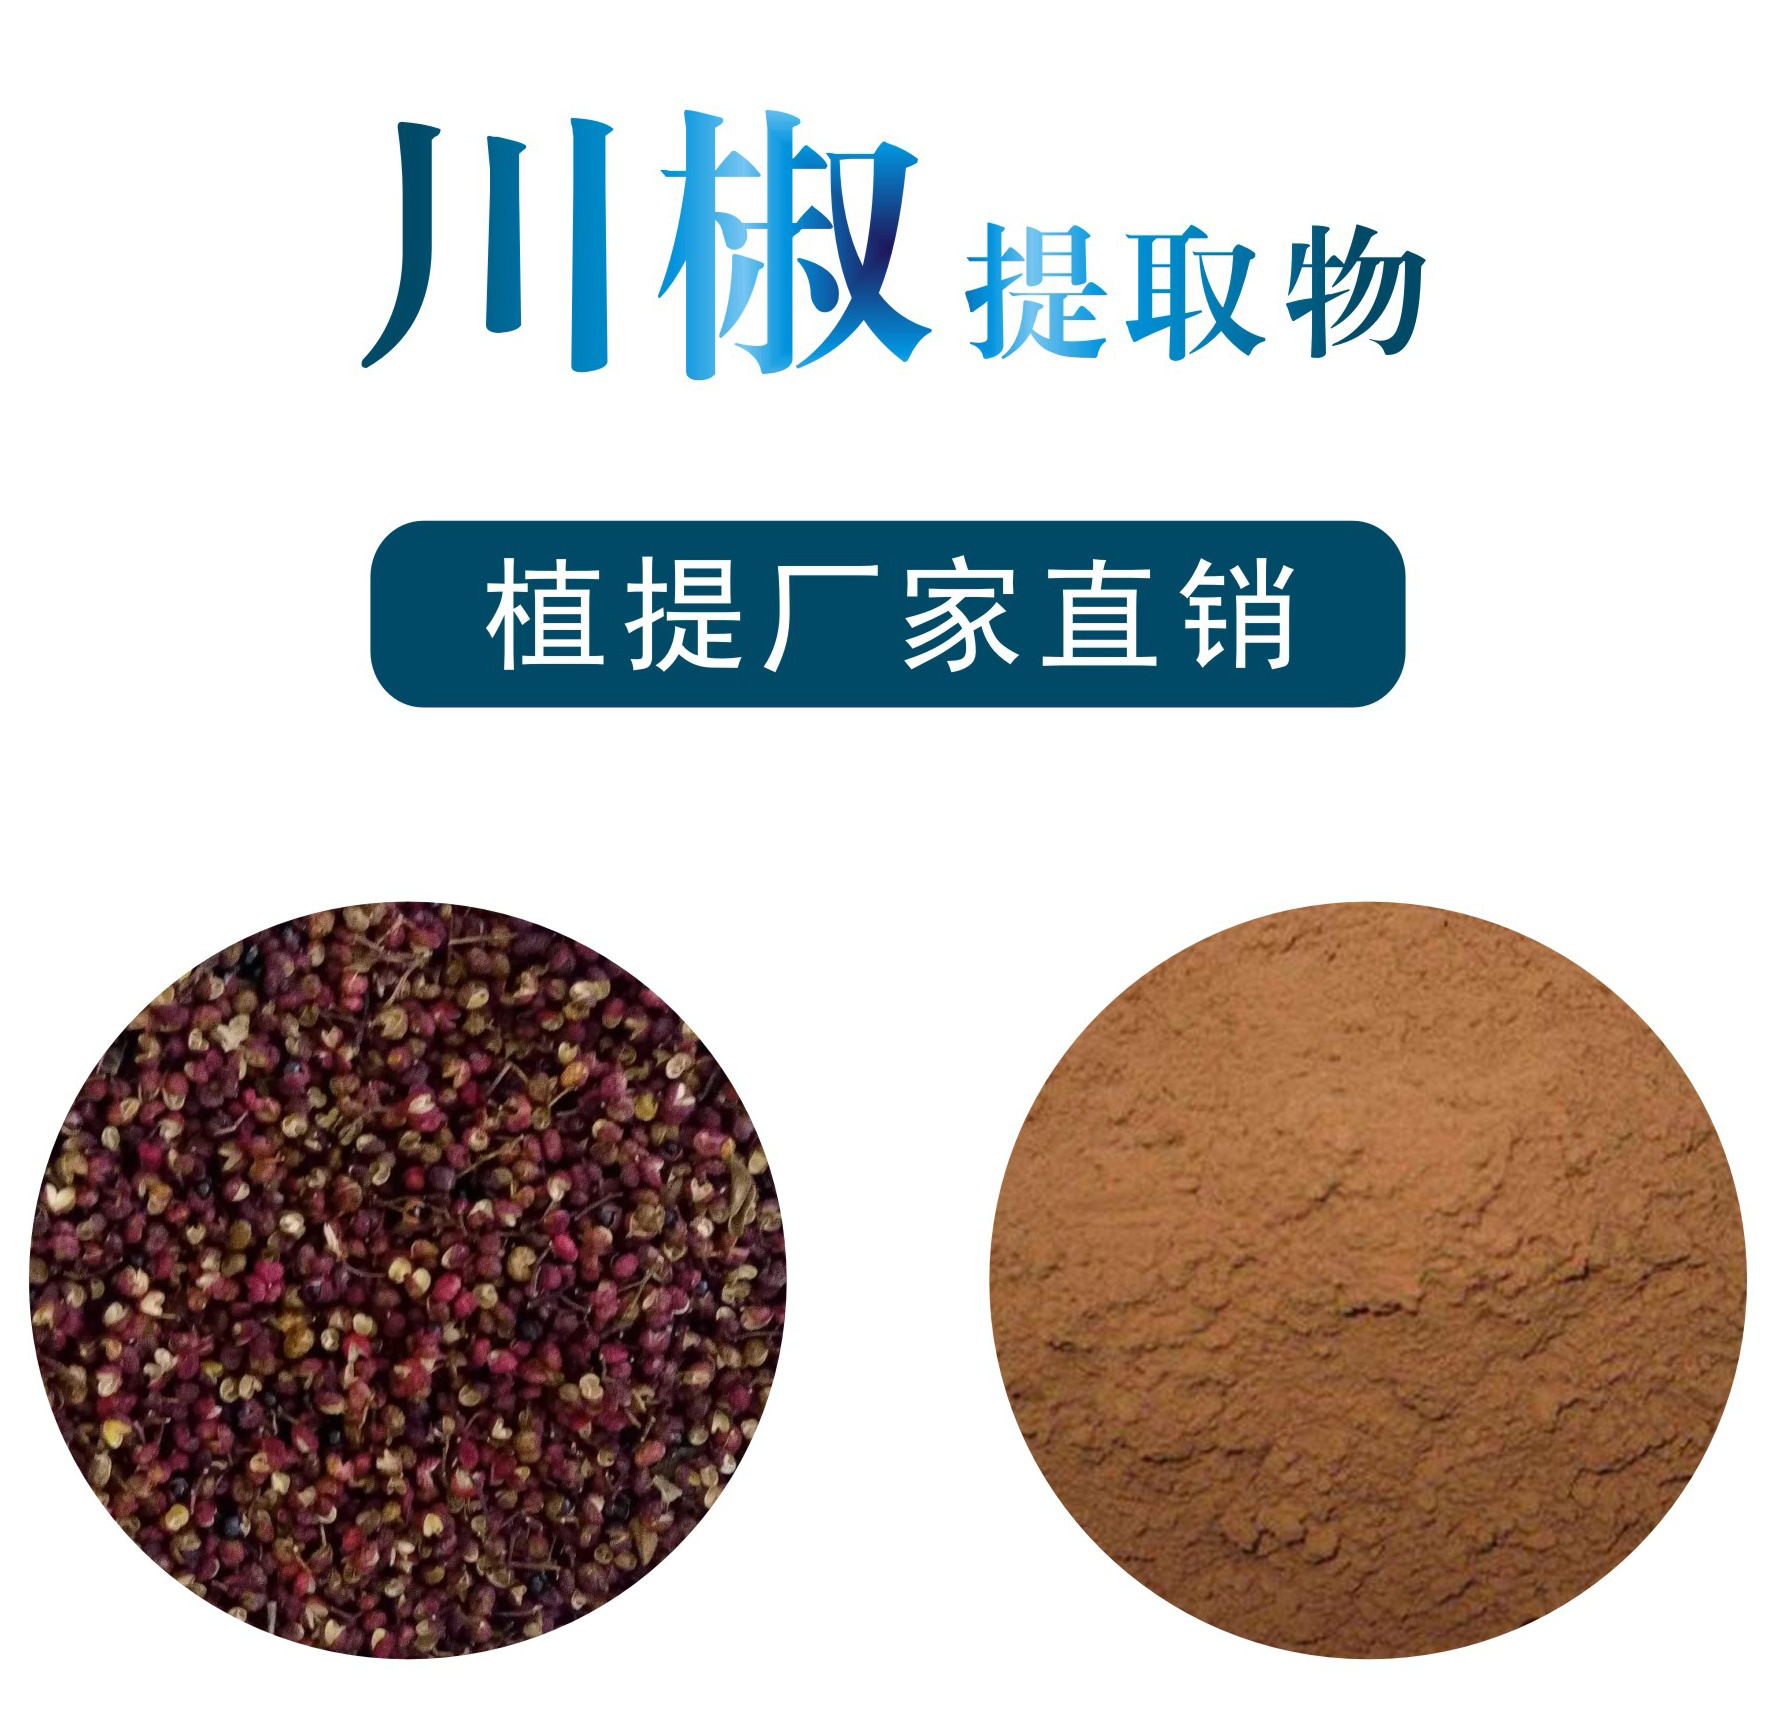 川椒提取物,Sichuan pepper extract